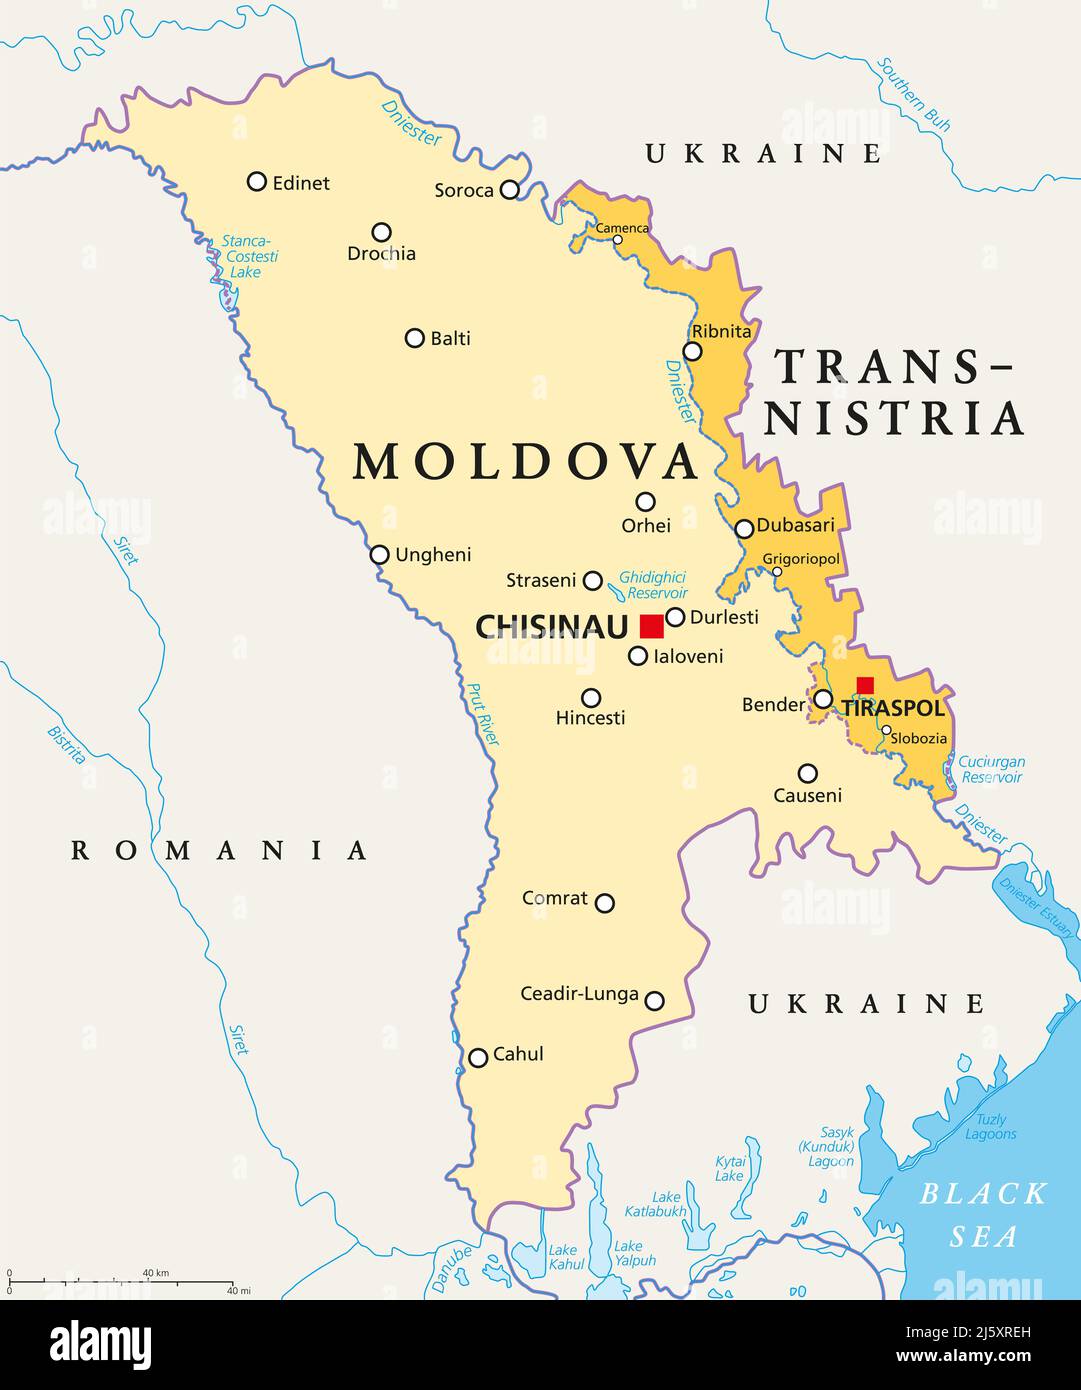 Moldova and Transnistria, political map. Republic of Moldova, with capital Chisinau, and the Pridnestrovian Moldavian Republic, PMR. Stock Photo